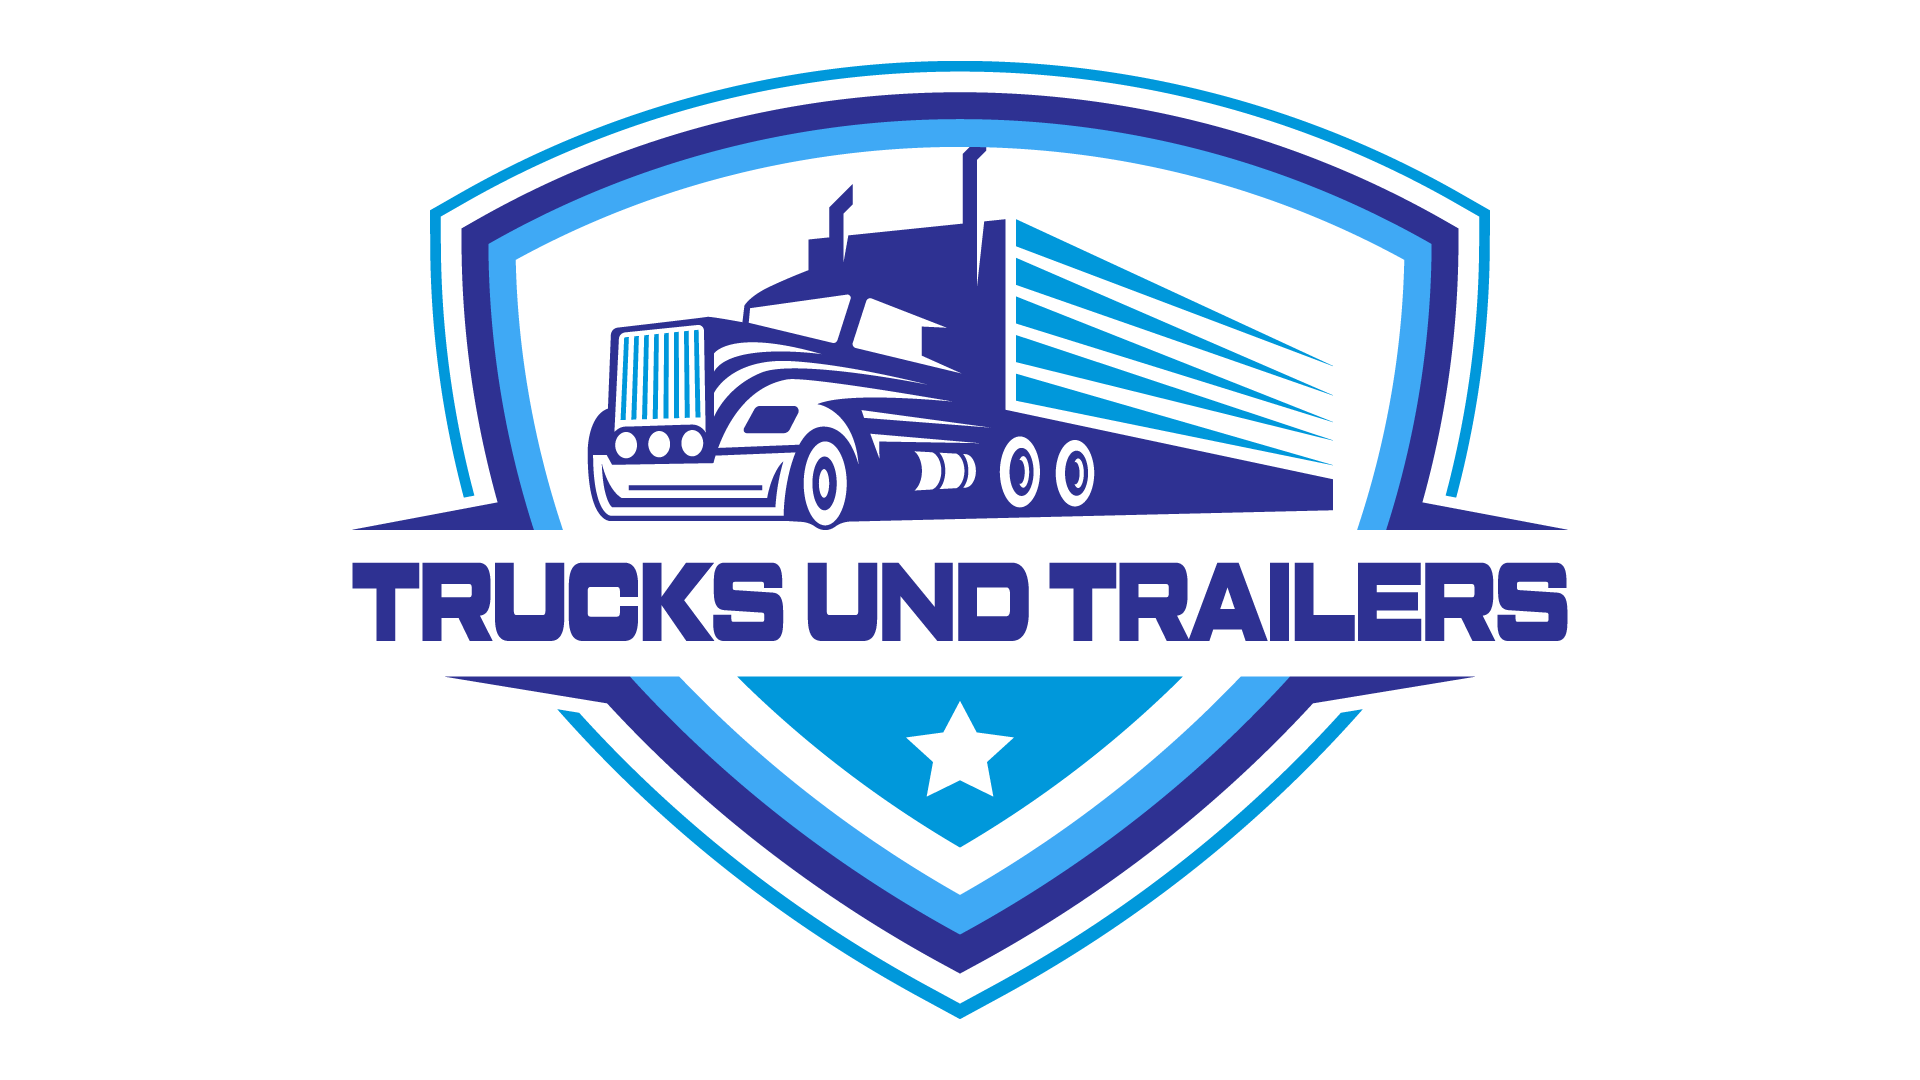 Trucks und Trailers